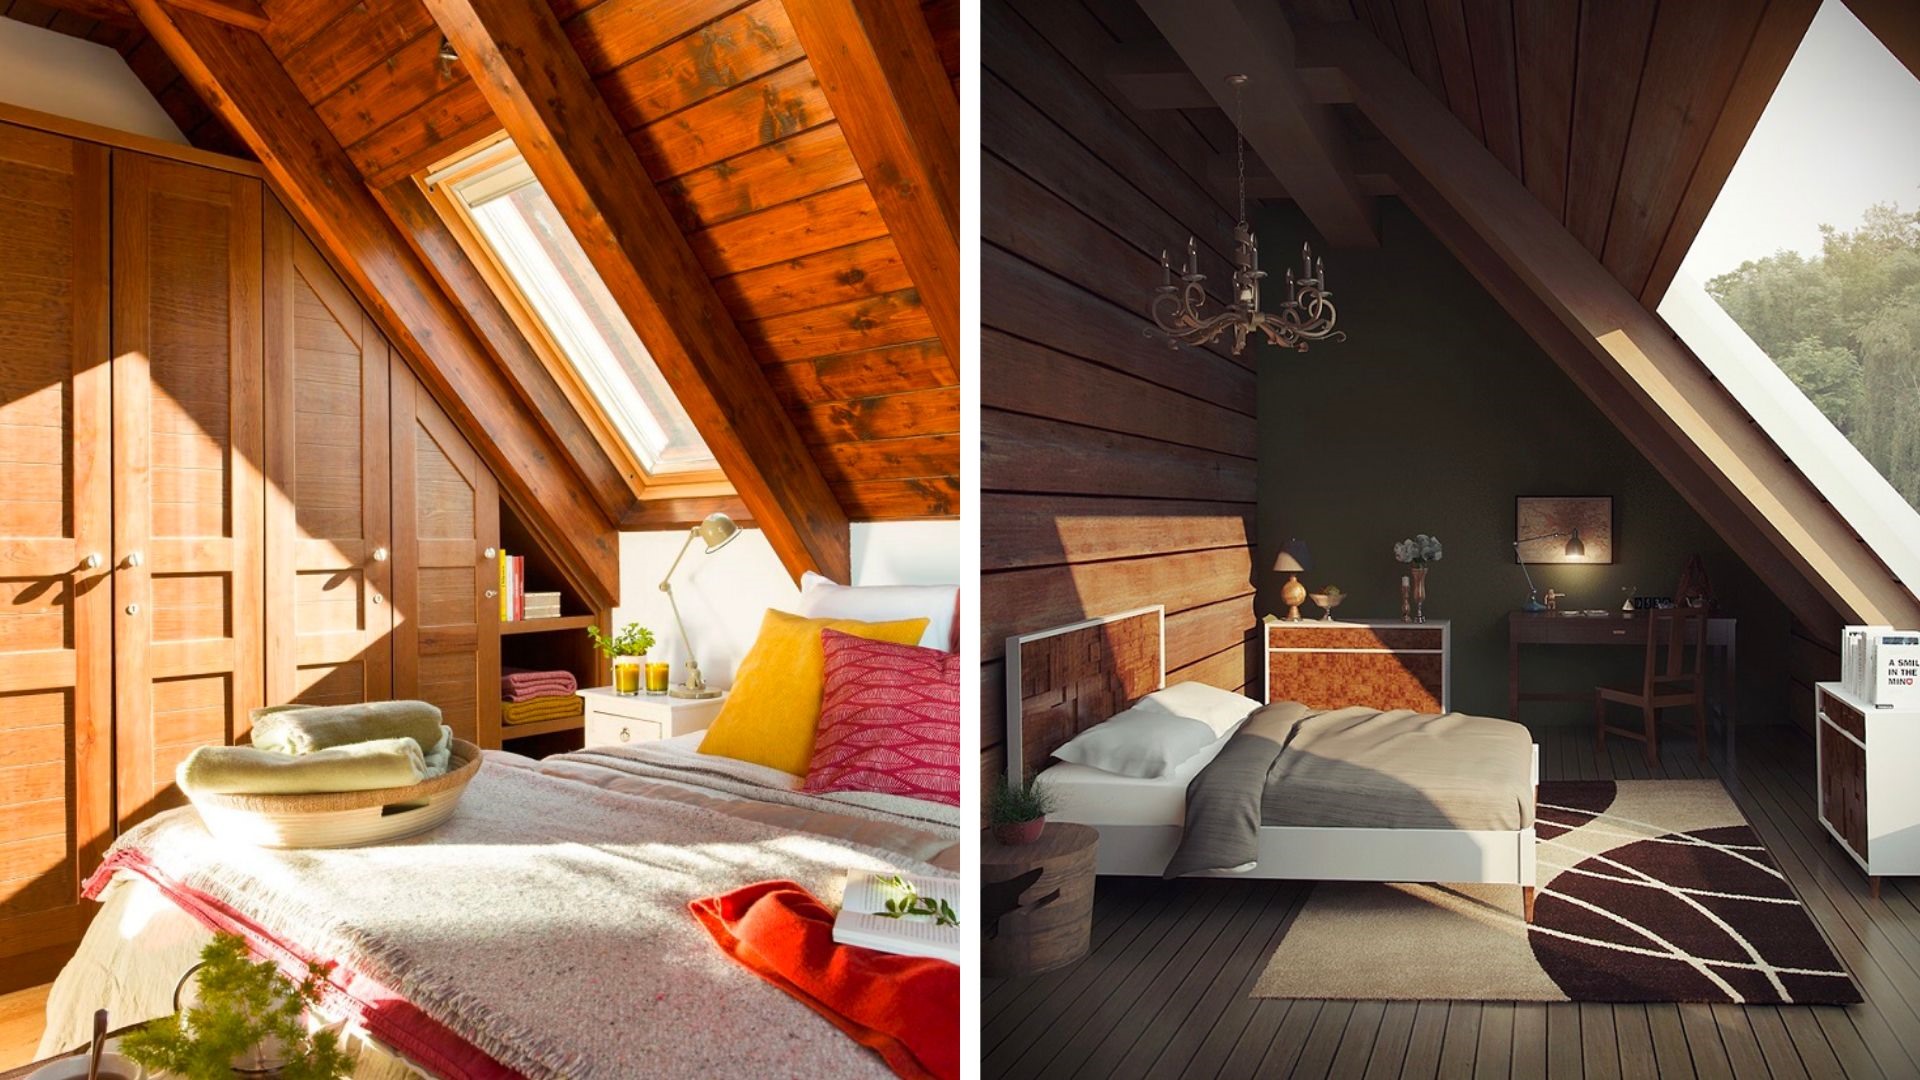 Thiết kế gác mái thành phòng ngủ là một trong những sự lựa chọn hàng đầu của nhiều gia đình. Đồ hoạ: Tuyết Lan